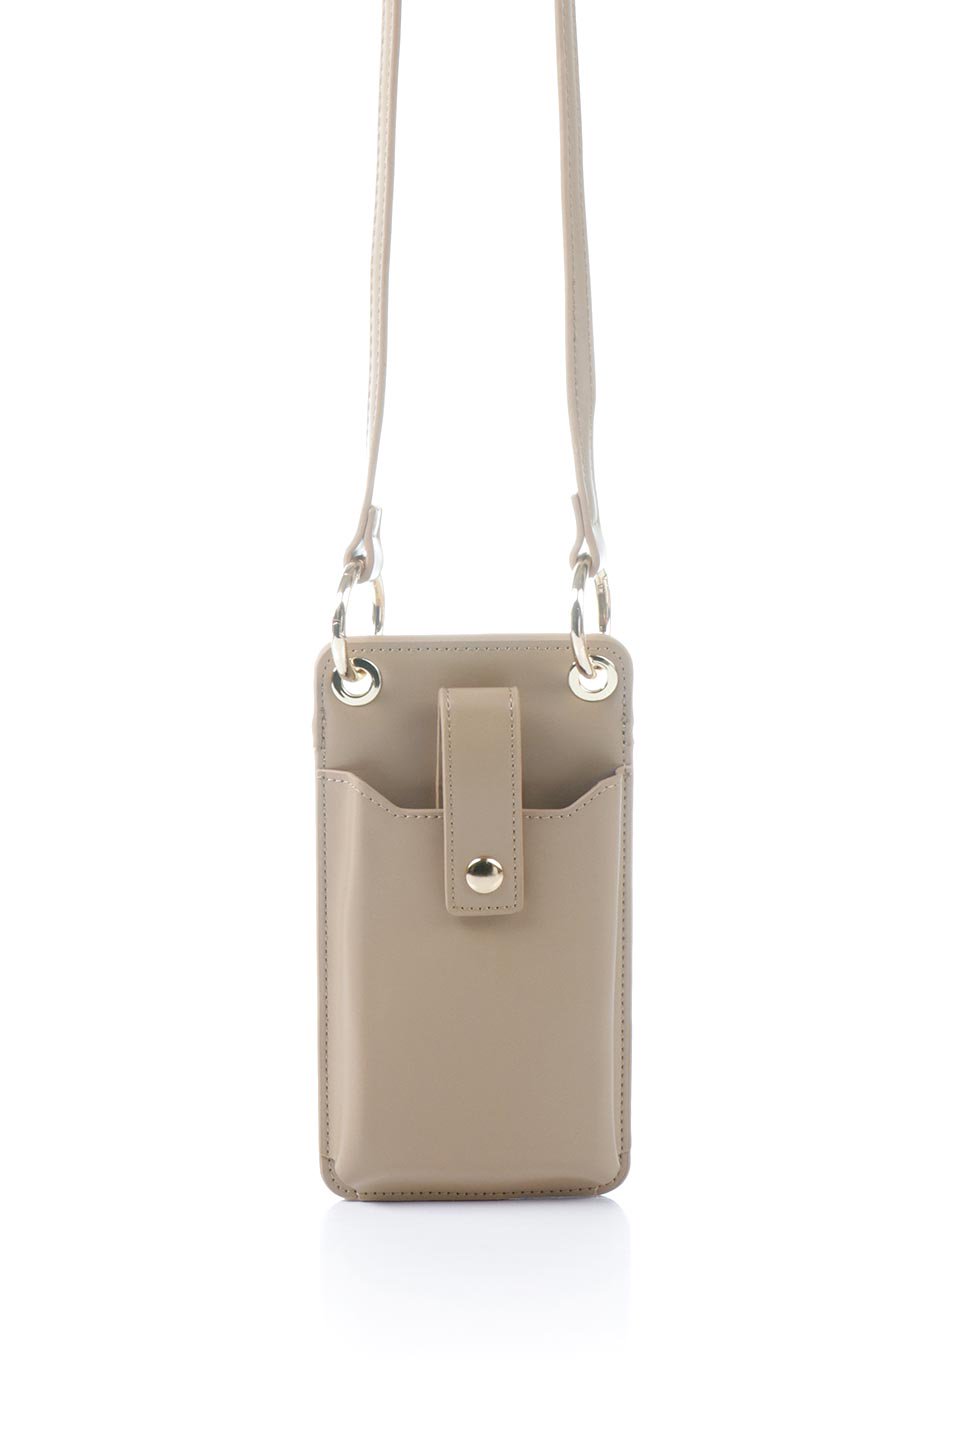 meliebiancoのTina(Nude)財布機能付き・スマホショルダー/海外ファッション好きにオススメのインポートバッグとかばん、MelieBianco（メリービアンコ）のバッグやその他。斜め掛けが便利なお財布としても使えるスマホショルダー。iPhone13ProMaxまでの大きさのスマホに対応するケースに、ファスナー付きのコインポケットと10個のカードスロットがついています。